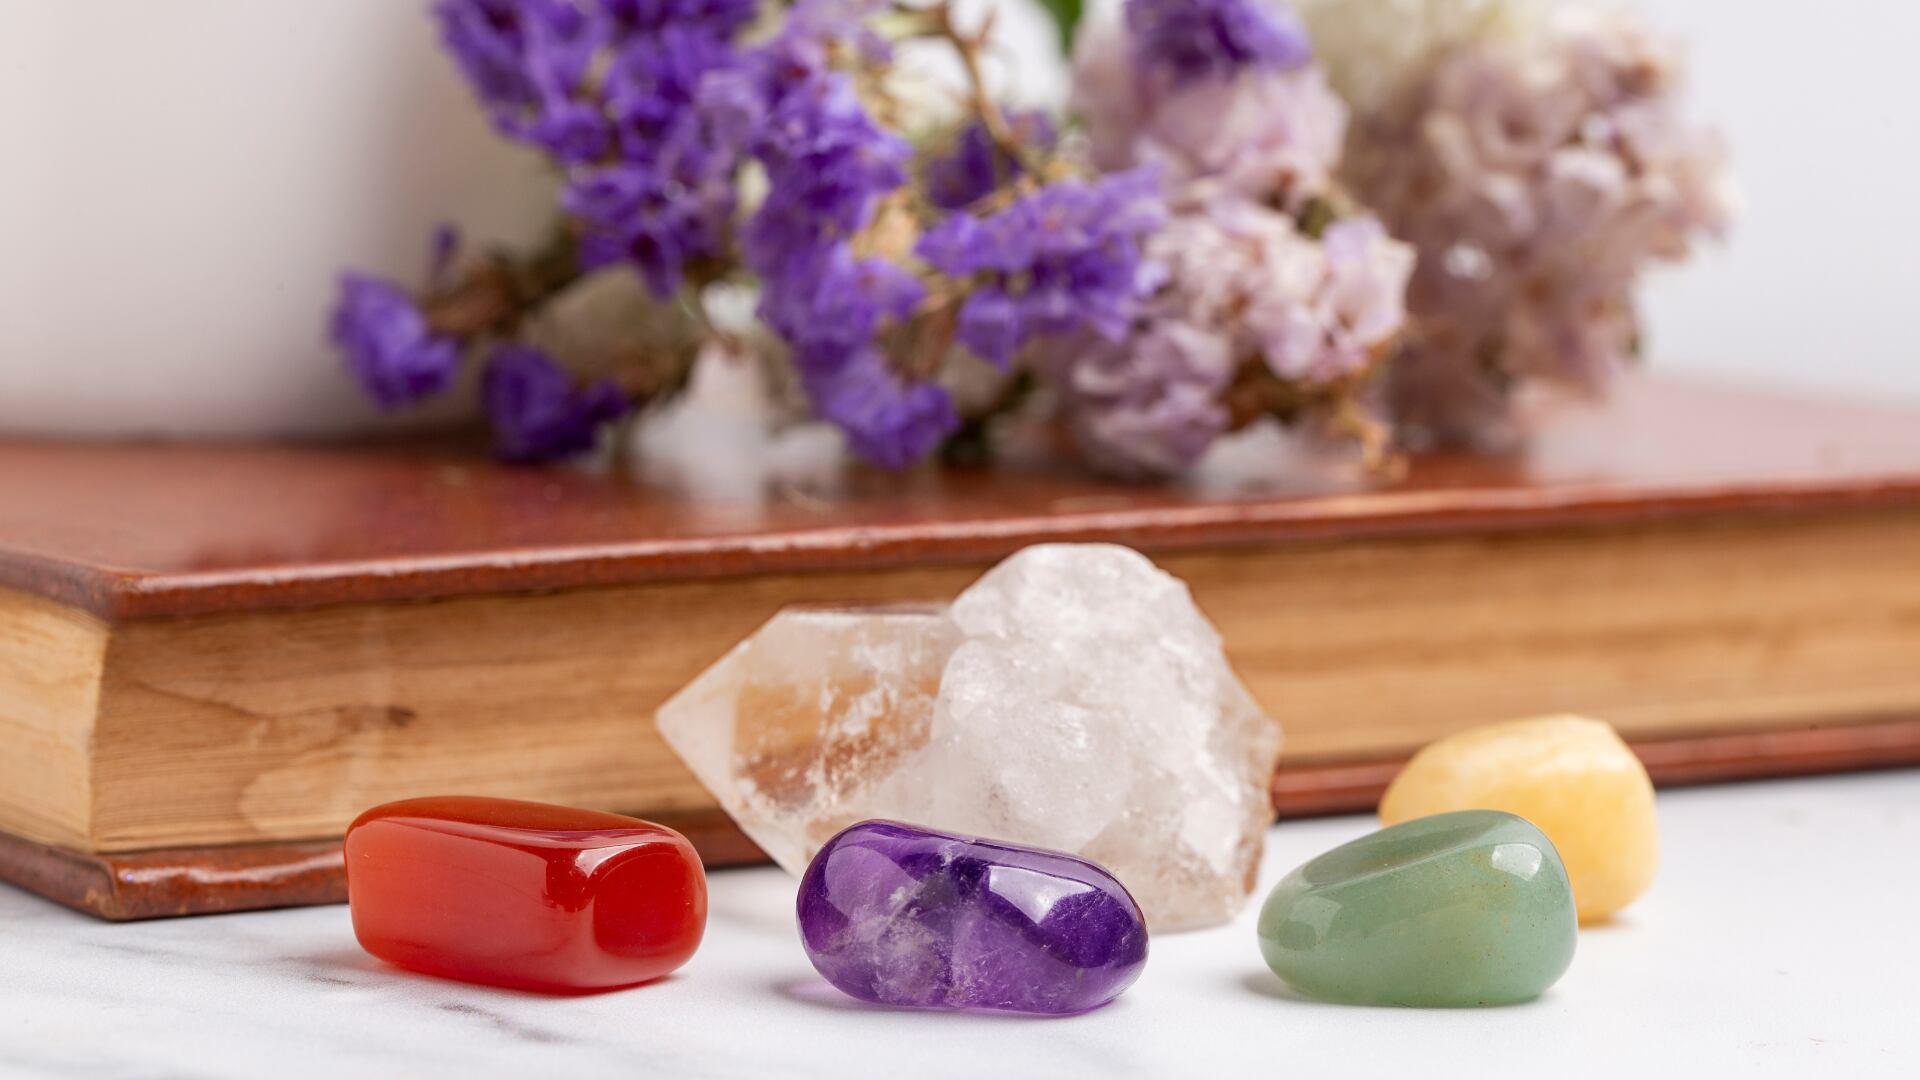 Cristales: estas son las piedras más poderosas para lograr protección y paz interna